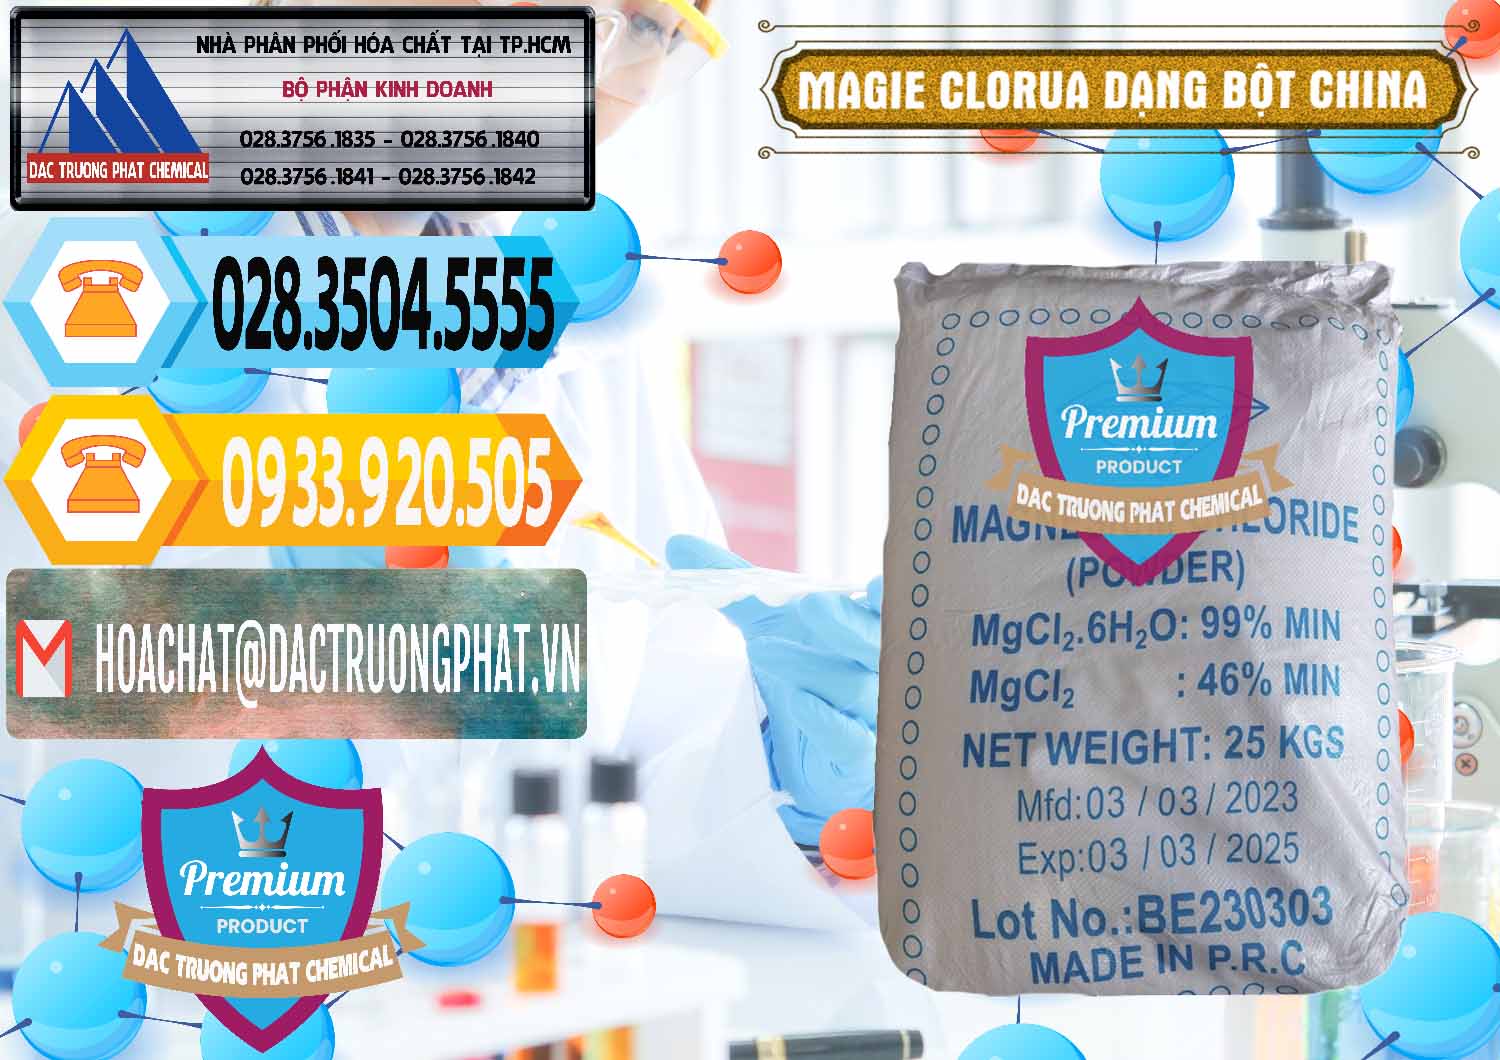 Chuyên bán & phân phối Magie Clorua – MGCL2 96% Dạng Bột Logo Kim Cương Trung Quốc China - 0387 - Phân phối & cung cấp hóa chất tại TP.HCM - hoachattayrua.net